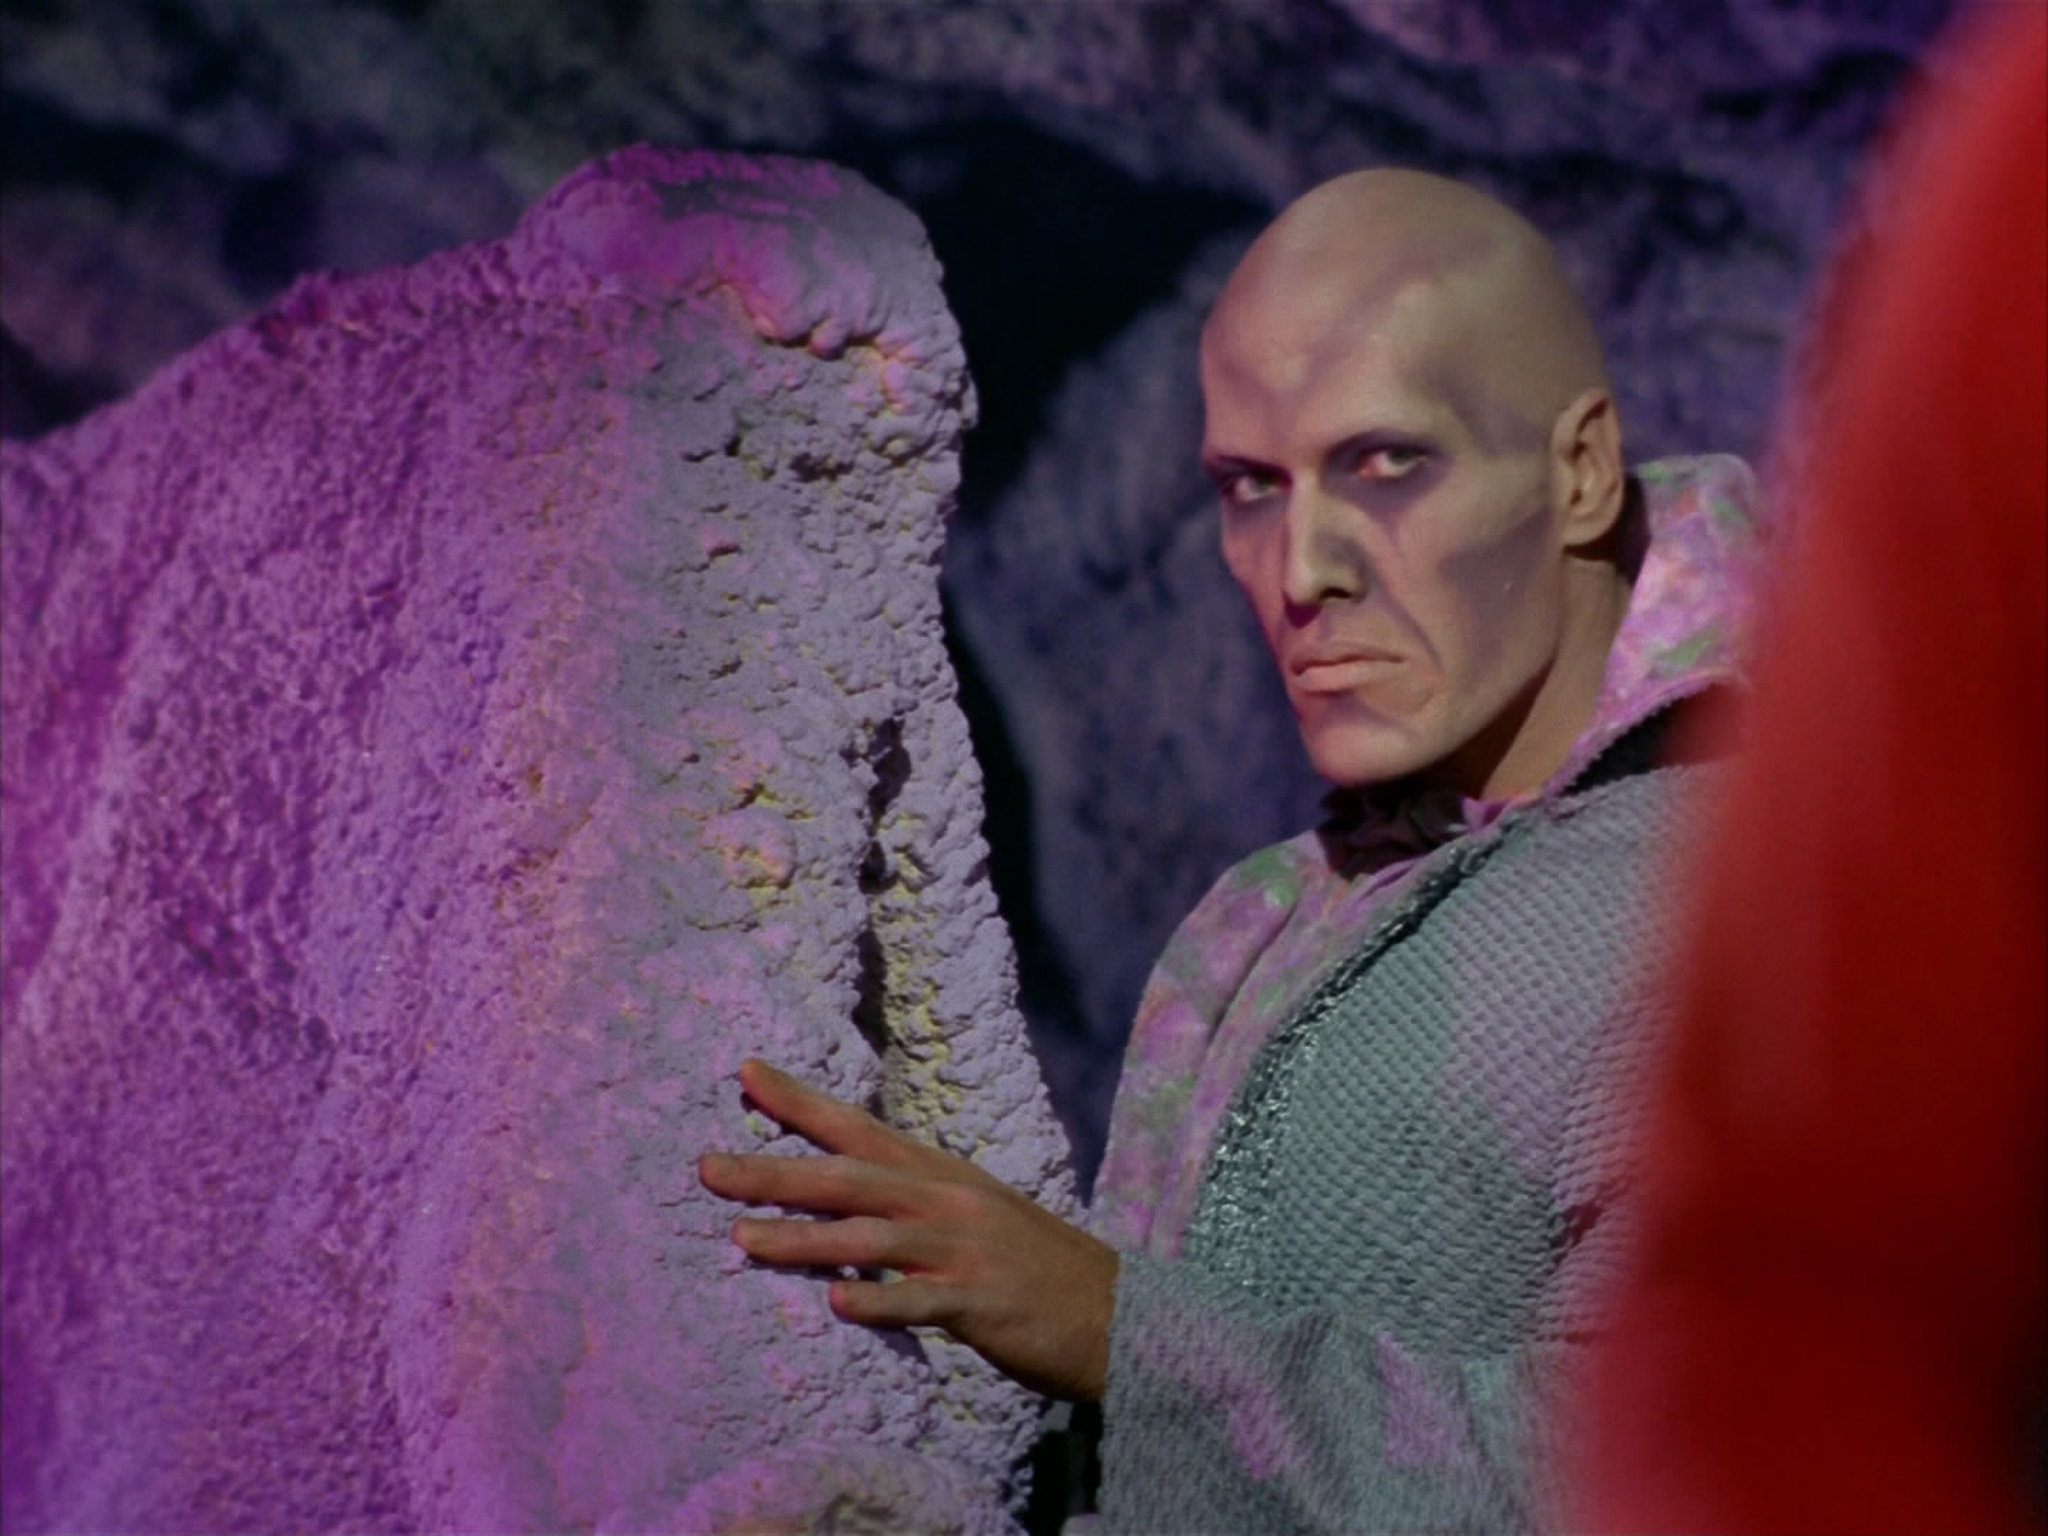 Still of Ted Cassidy in Star Trek (1966)